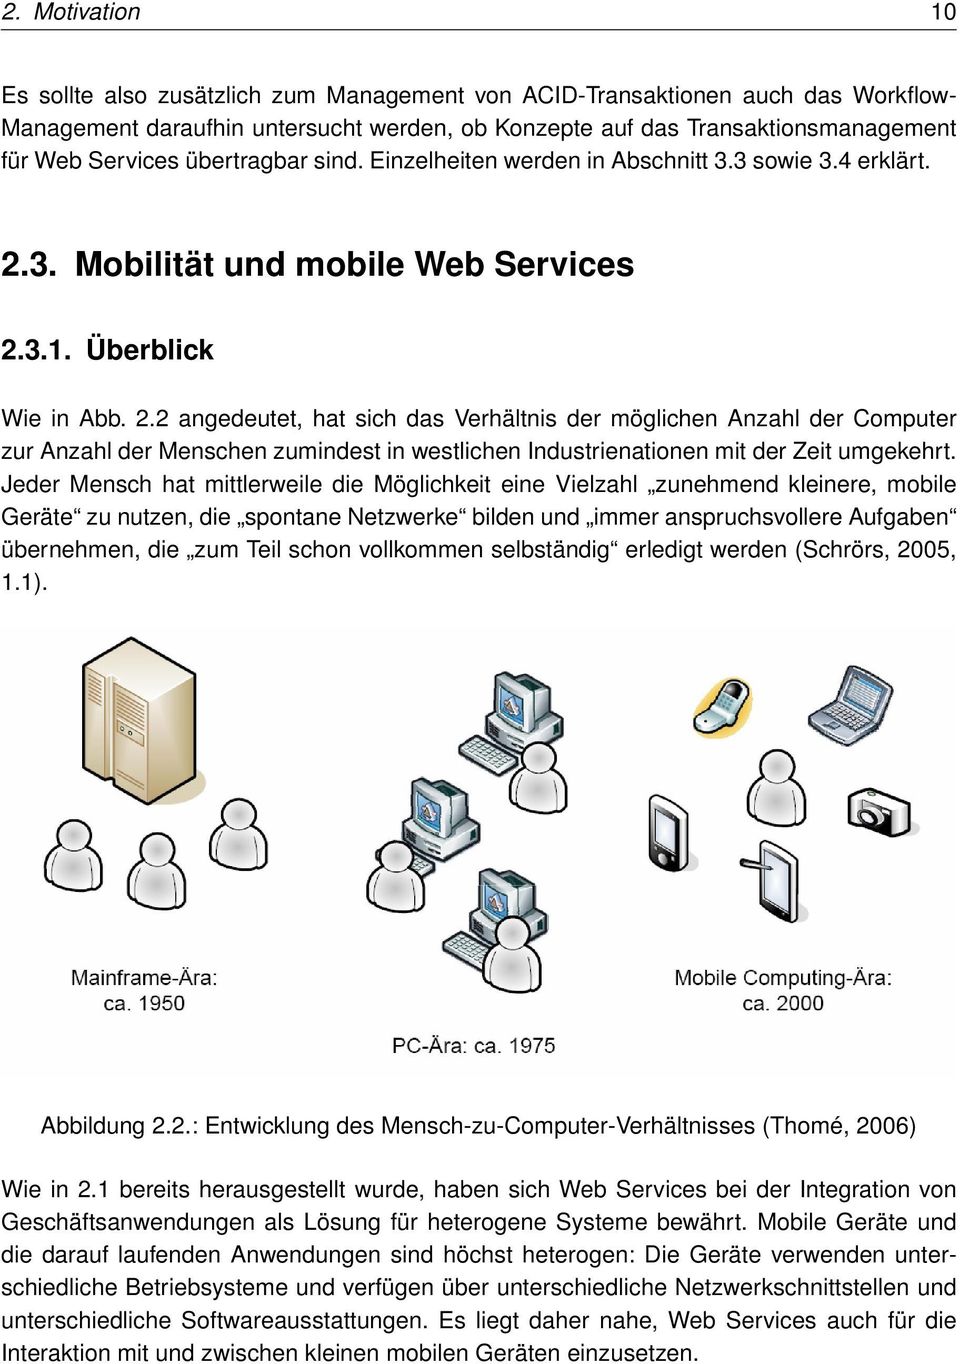 3. Mobilität und mobile Web Services 2.3.1. Überblick Wie in Abb. 2.2 angedeutet, hat sich das Verhältnis der möglichen Anzahl der Computer zur Anzahl der Menschen zumindest in westlichen Industrienationen mit der Zeit umgekehrt.